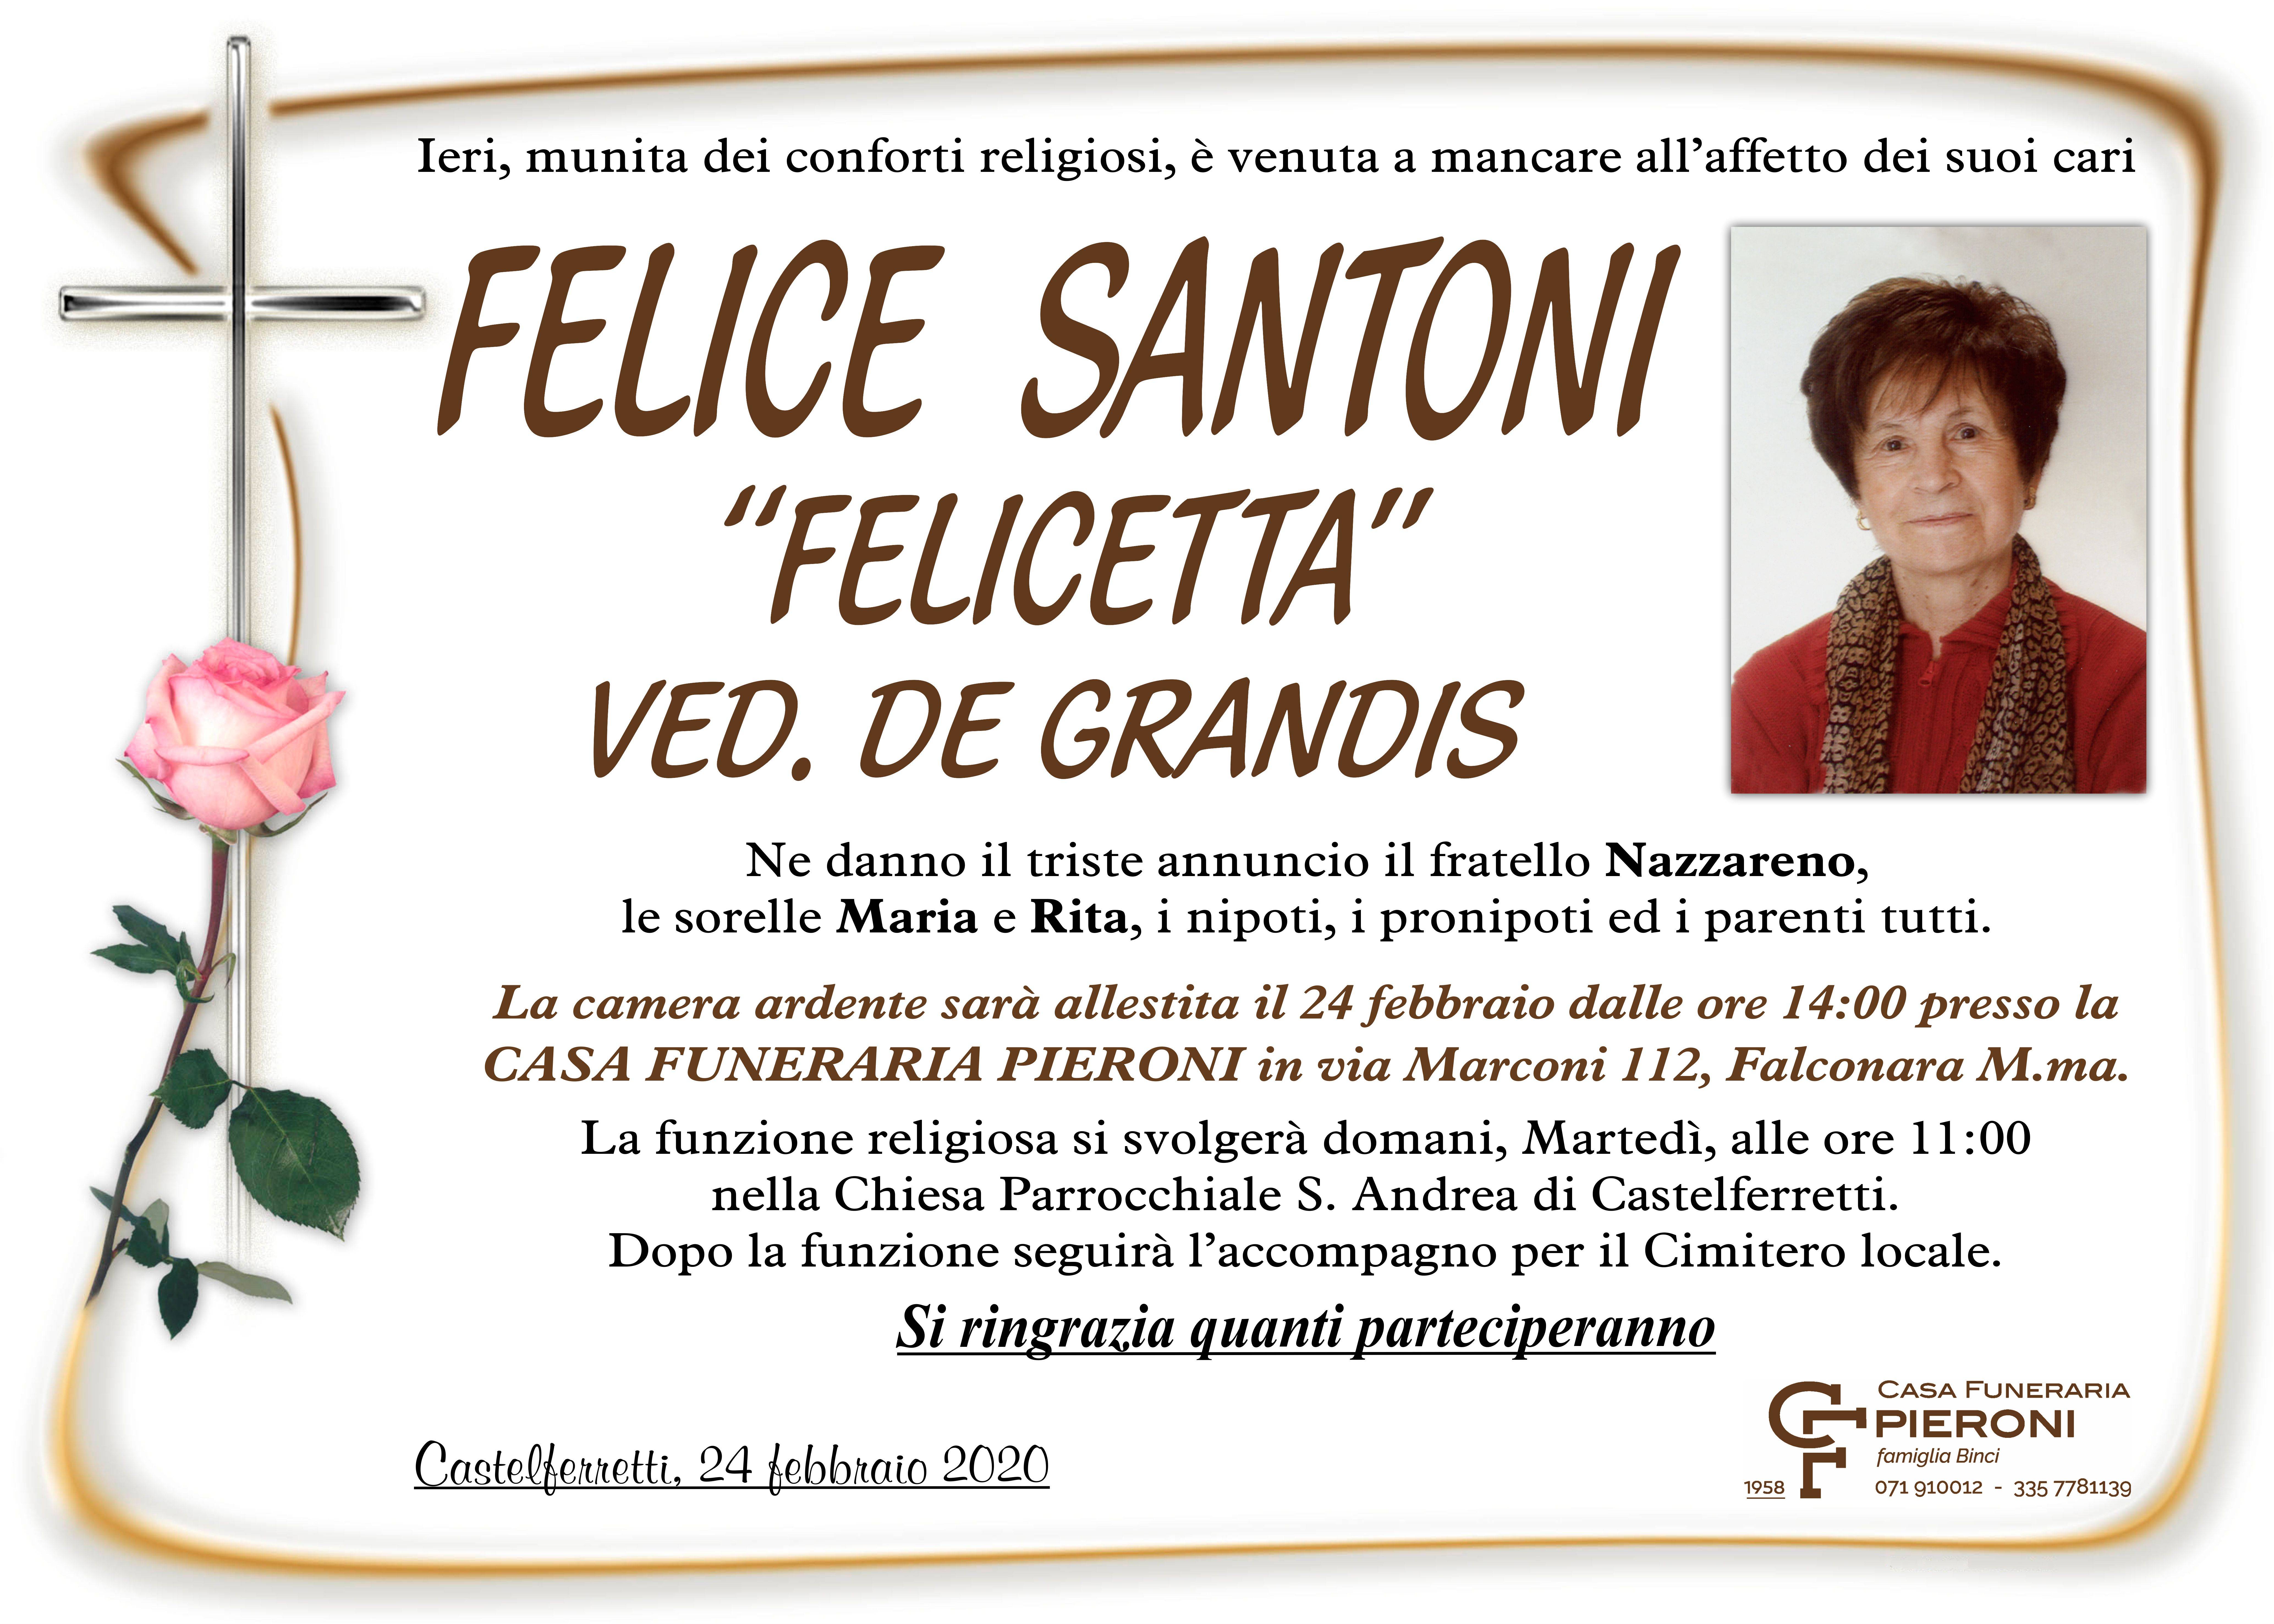 Felice “Felicetta” Santoni